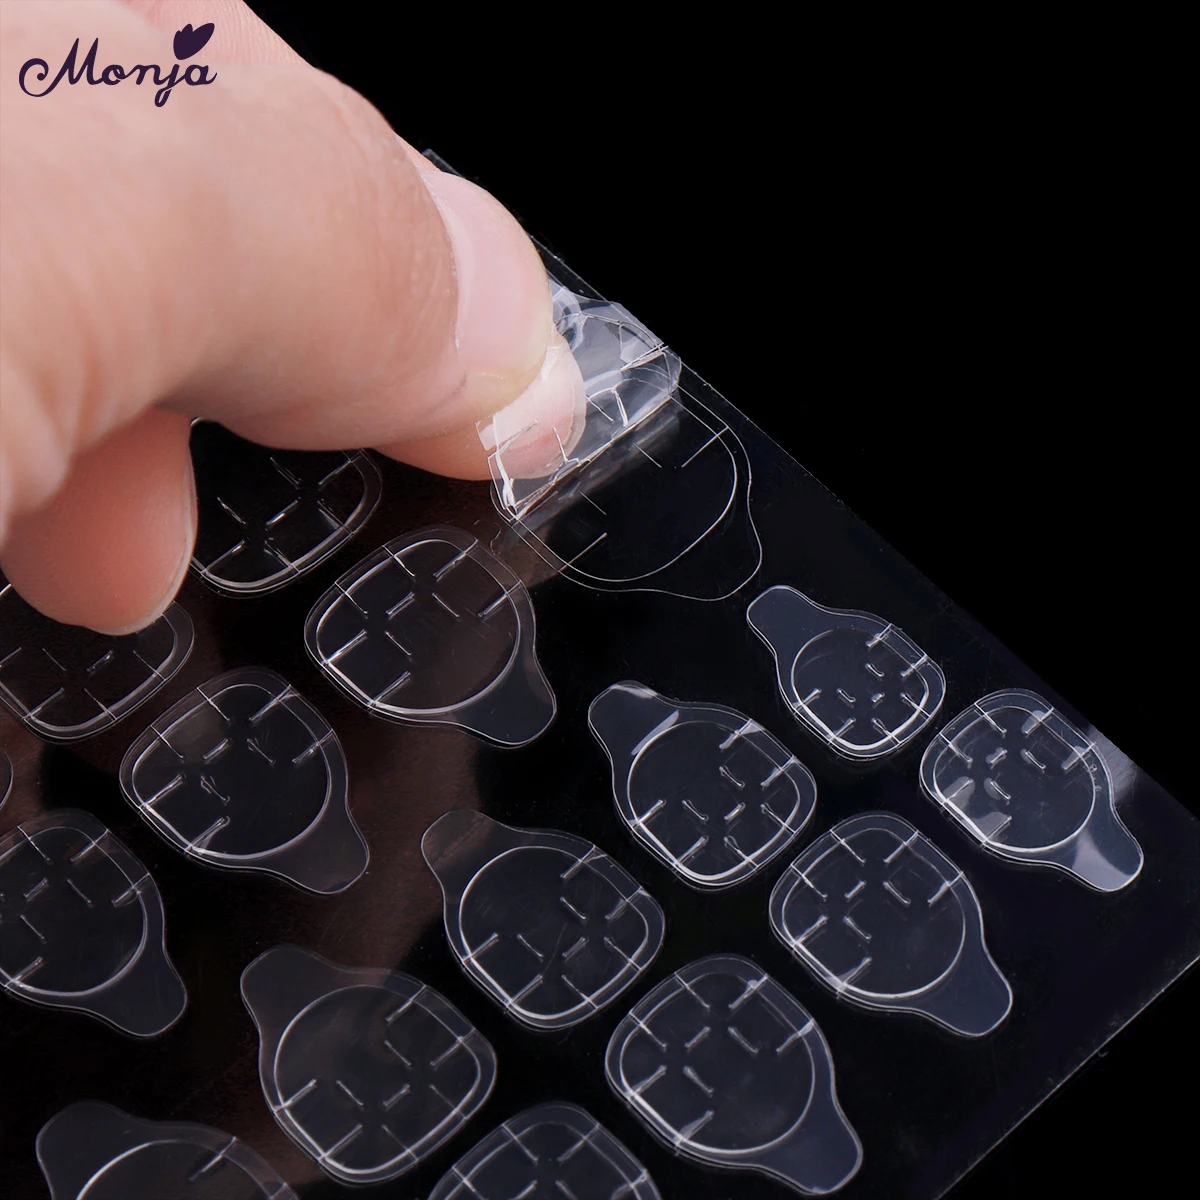 Monja дизайн ногтей Гибкие прозрачные двухсторонние клейкие наклейки с лентами пальцев для накладных ногтей типсы аксессуары